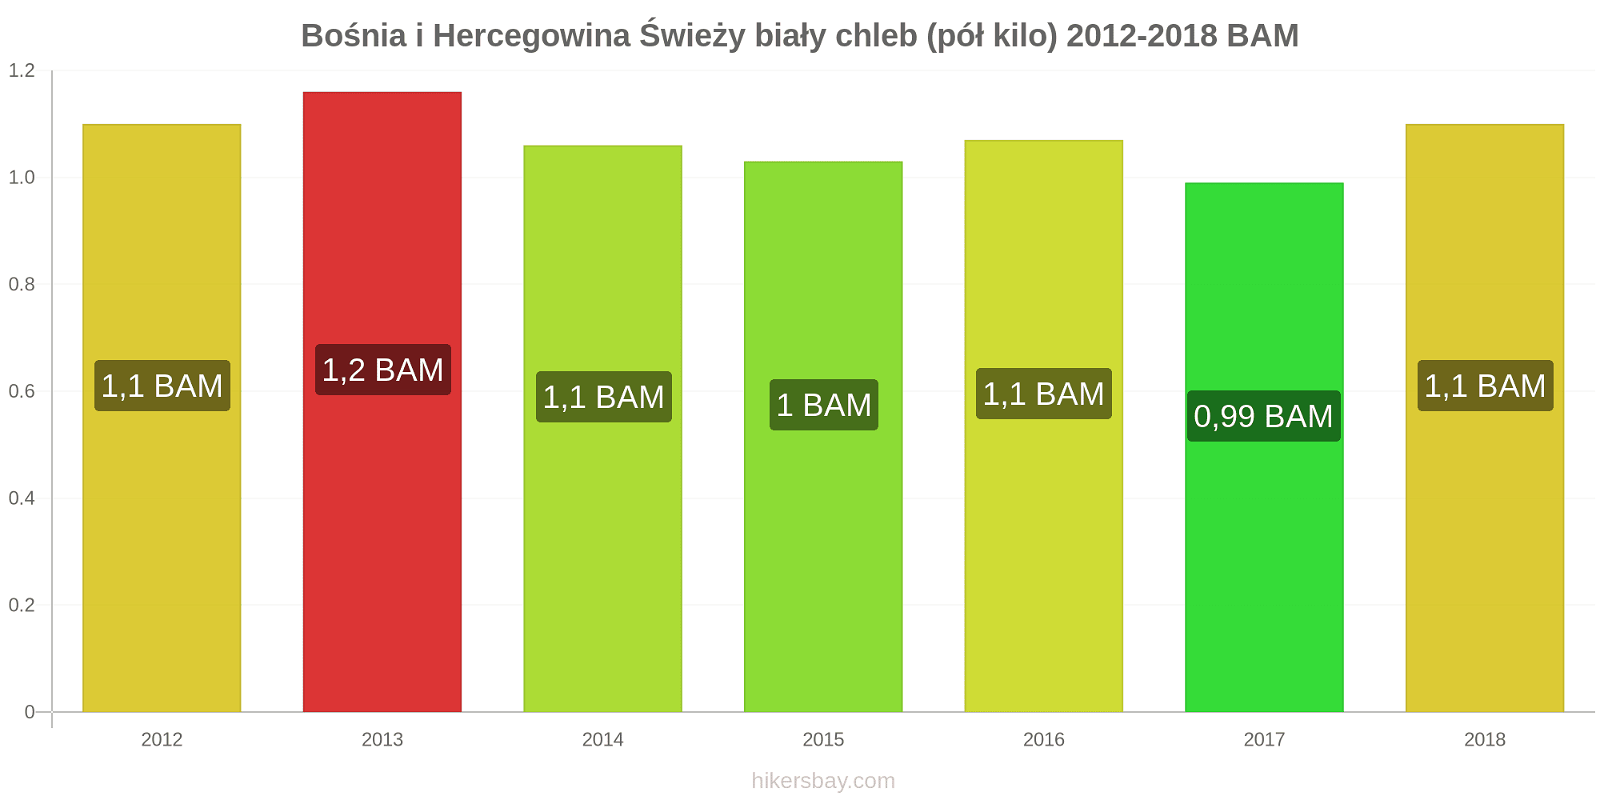 Bośnia i Hercegowina zmiany cen Chleb pół kilo hikersbay.com